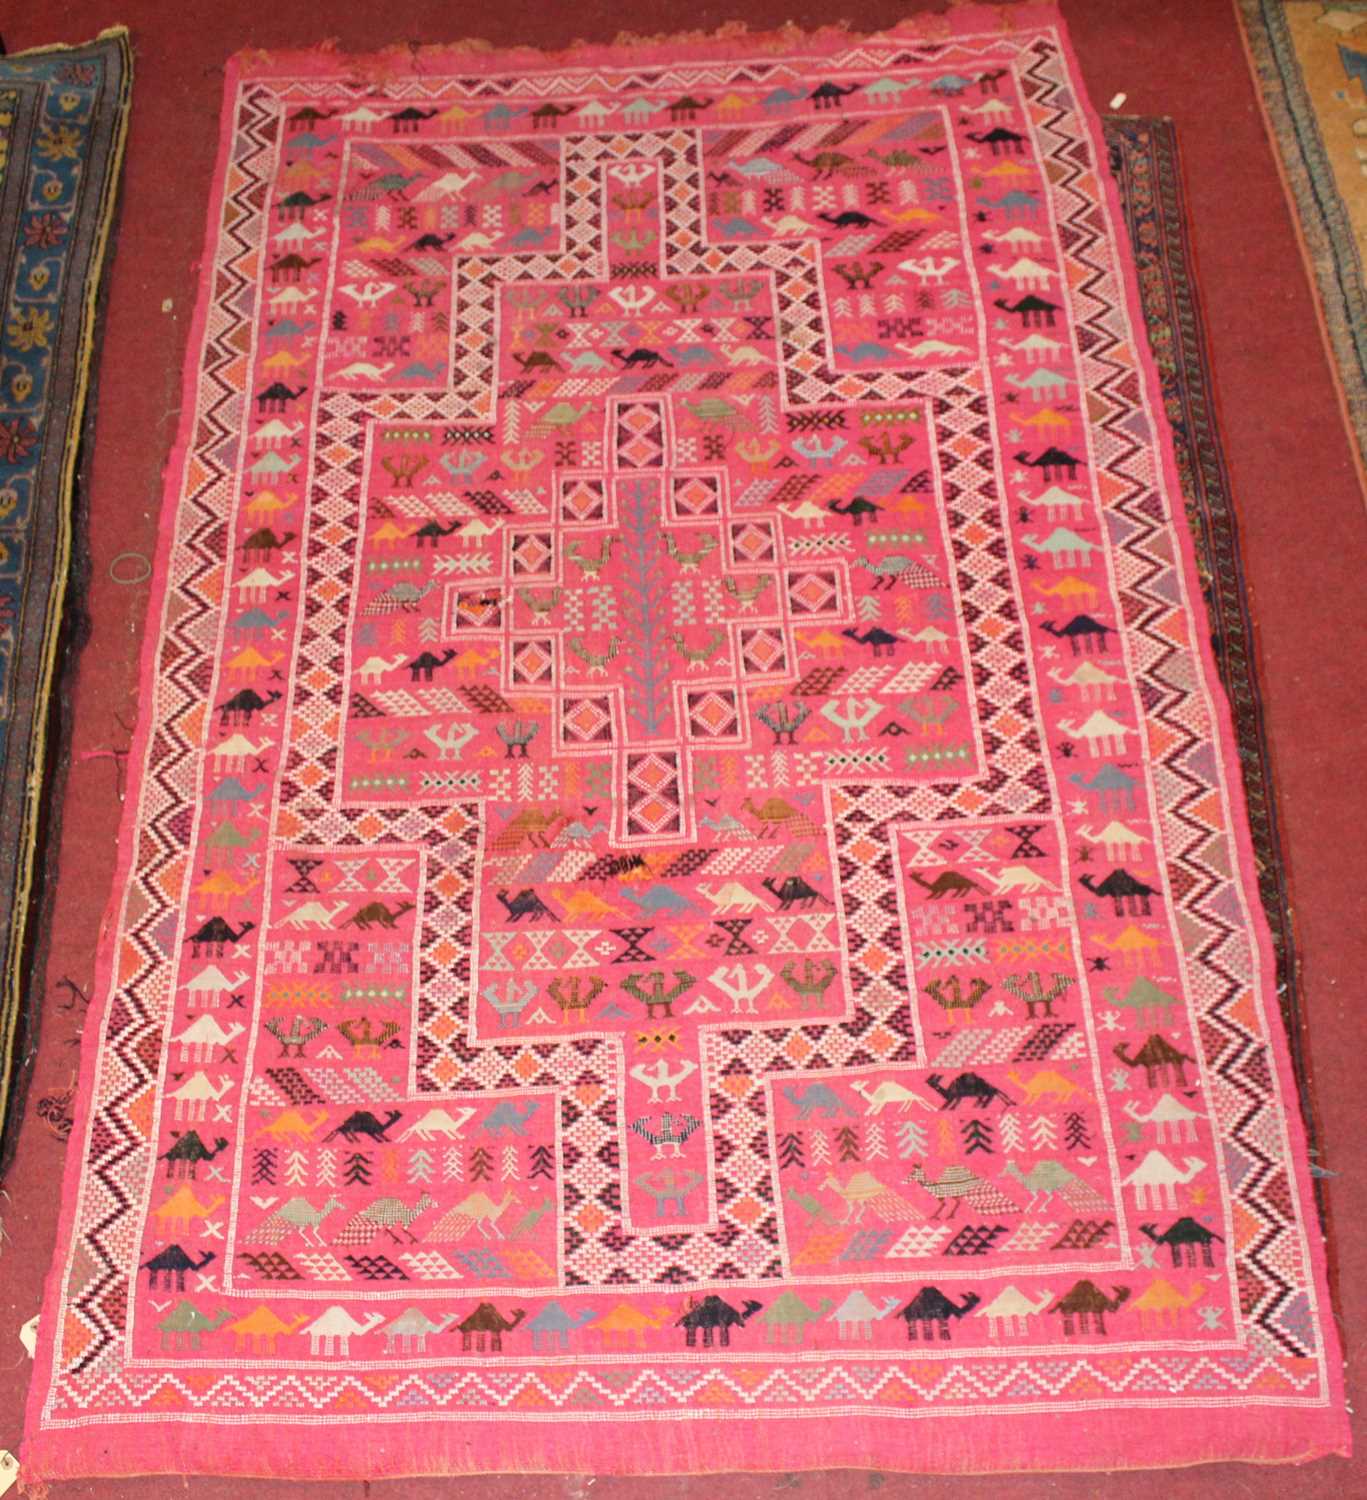 Lot 21 - * A Turkish woollen Kilim rug, the pink ground...